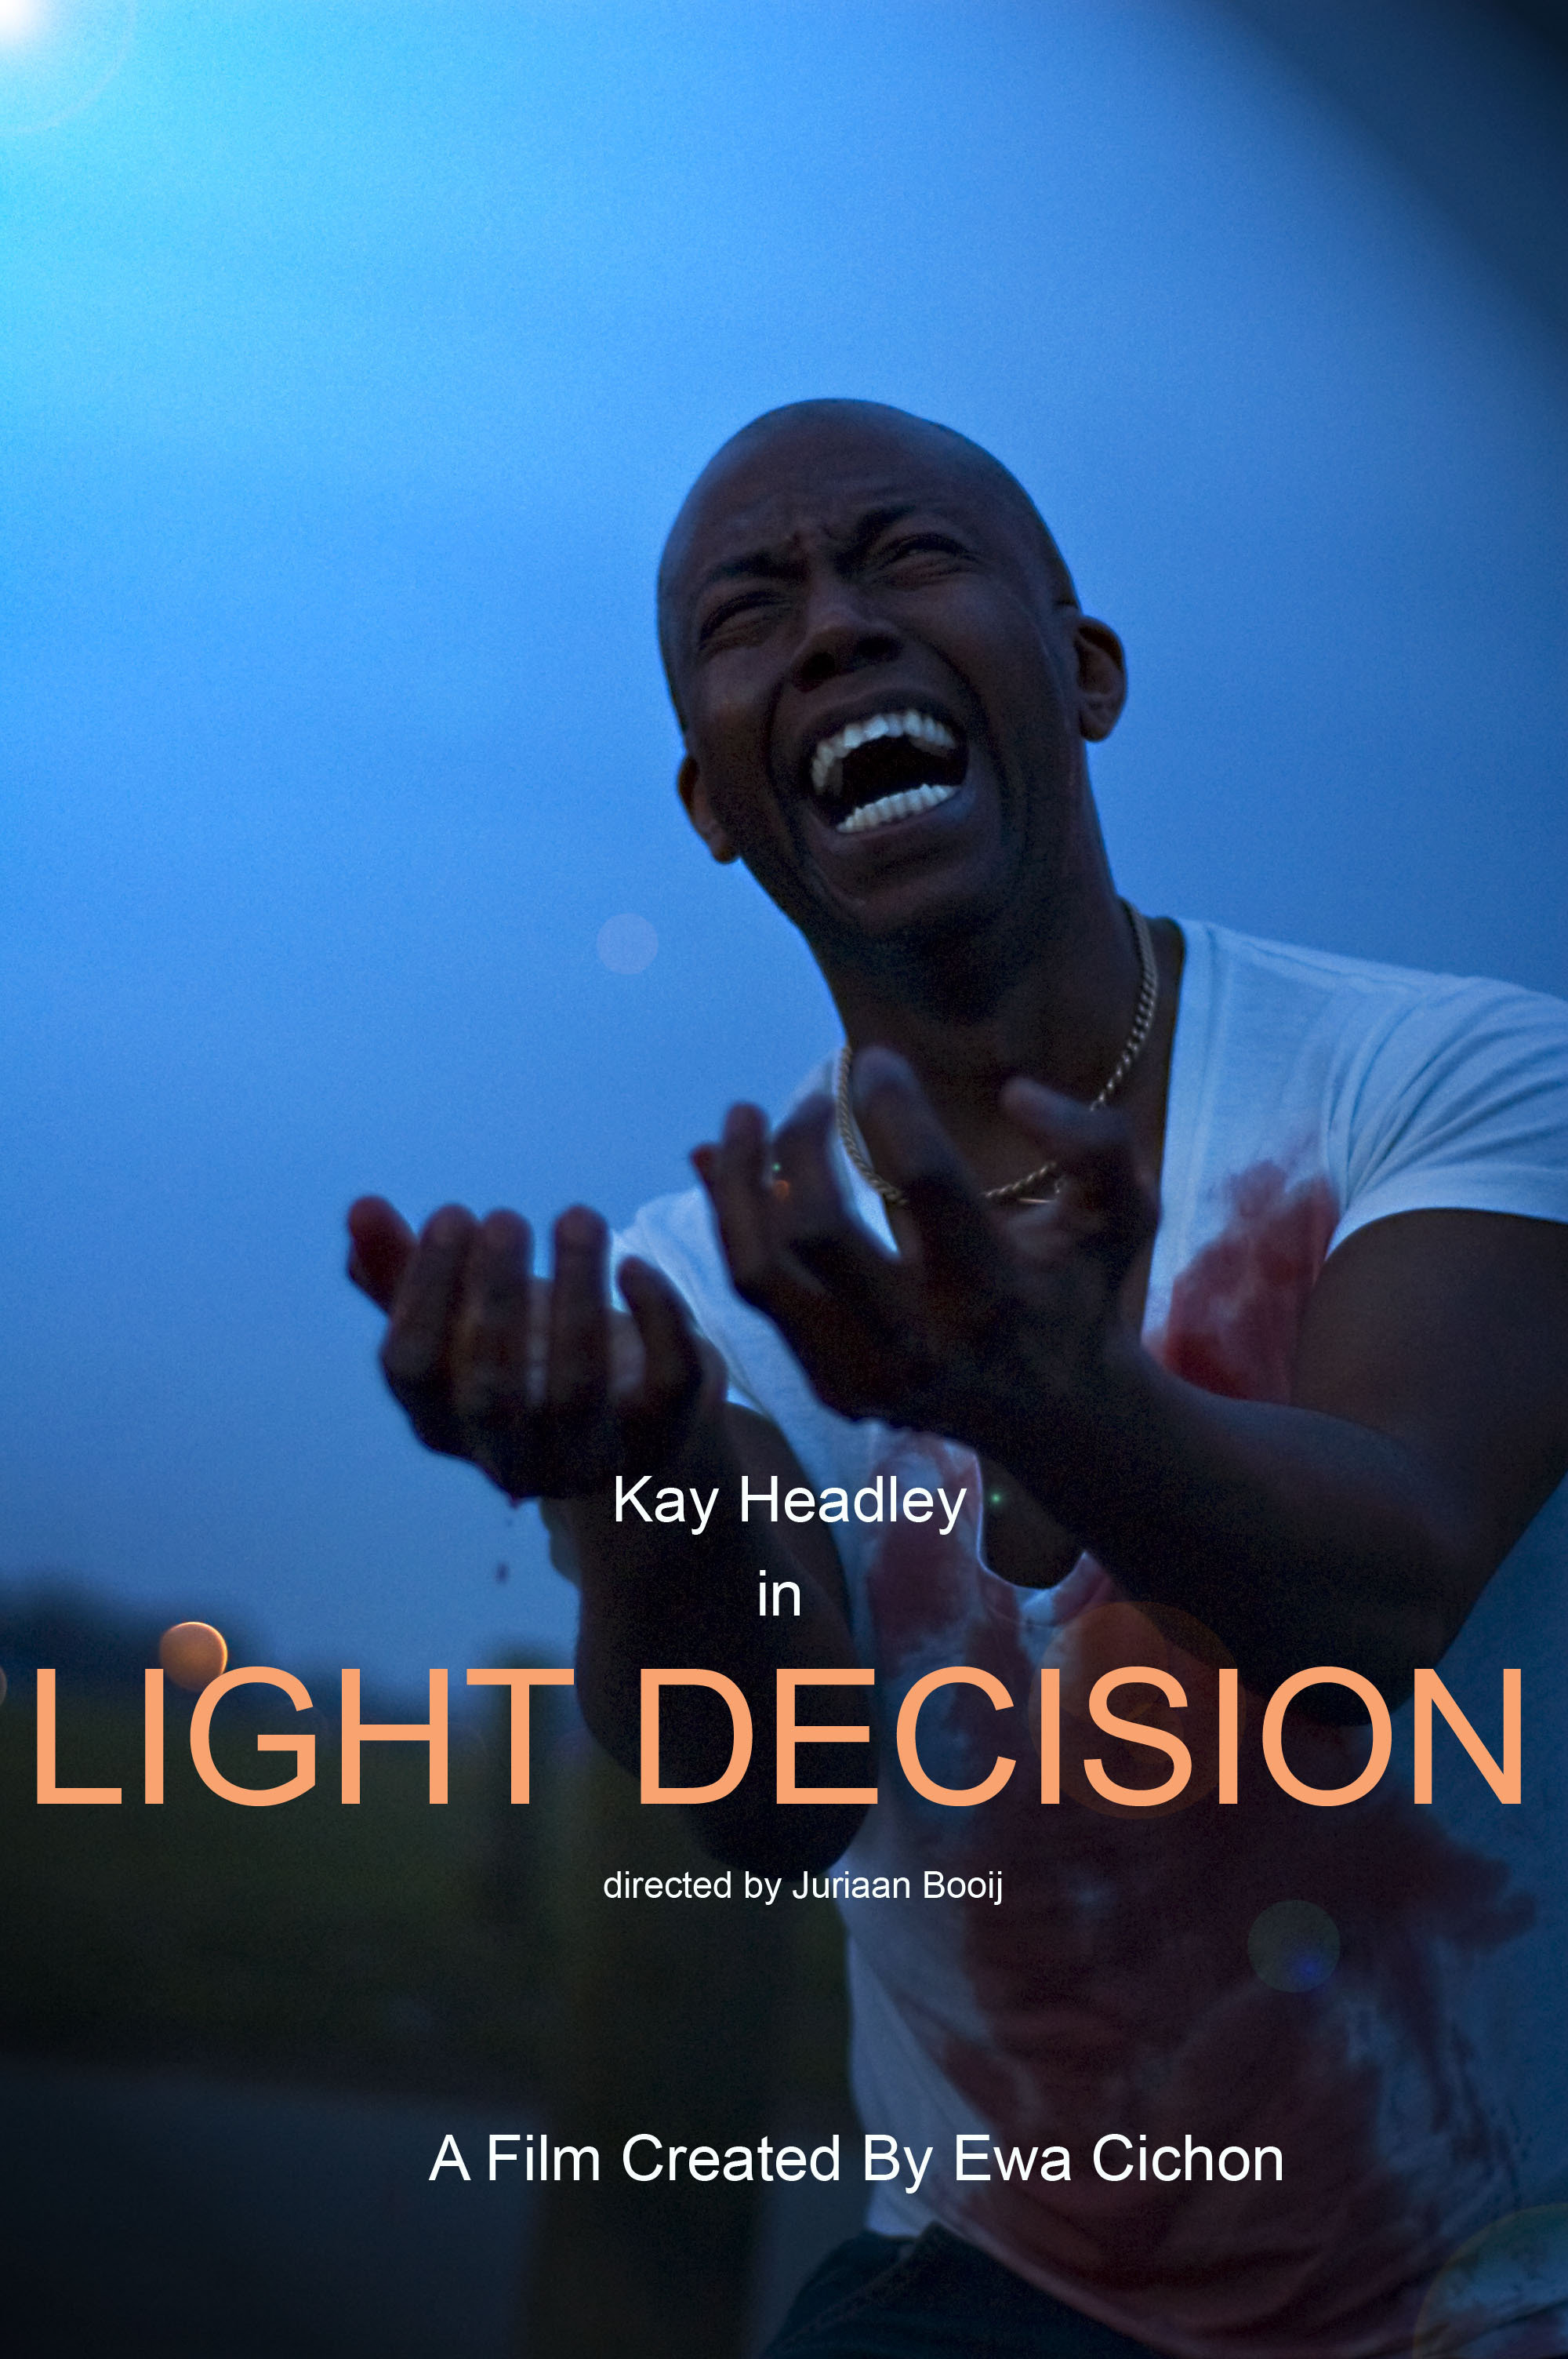 Light Decision (Official Poster) http://www.lightdecision.co.uk/